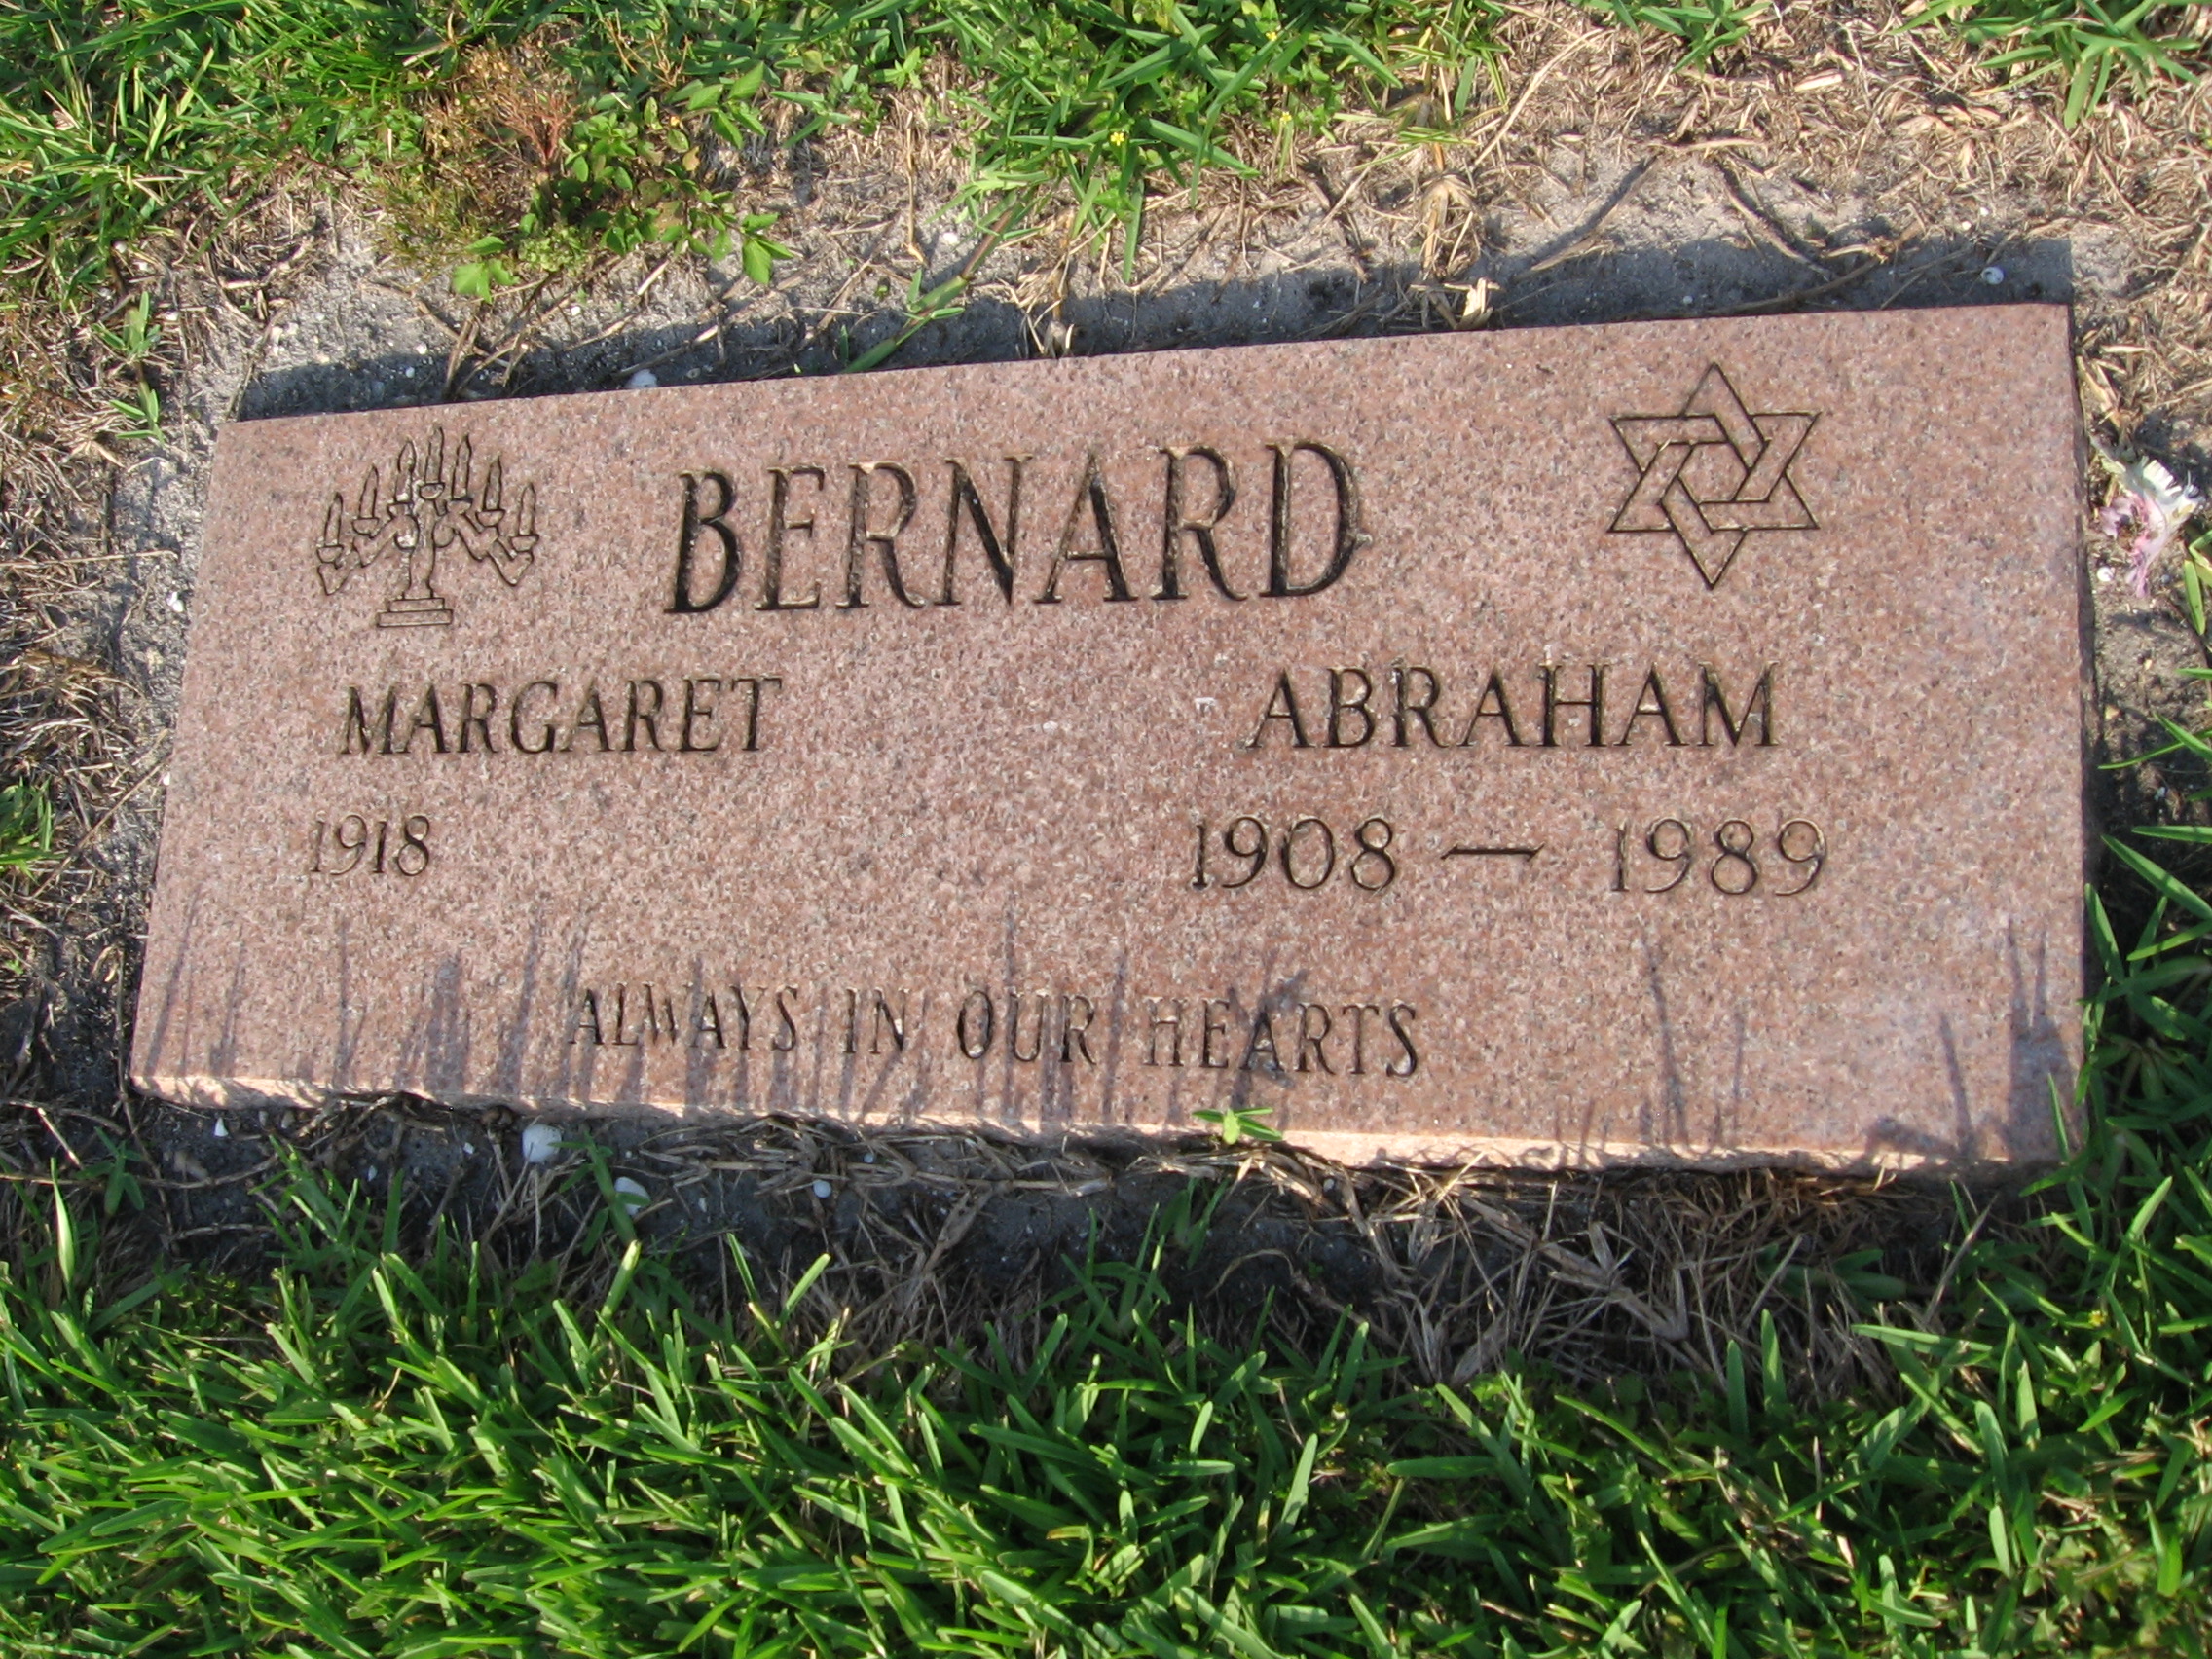 Abraham Bernard